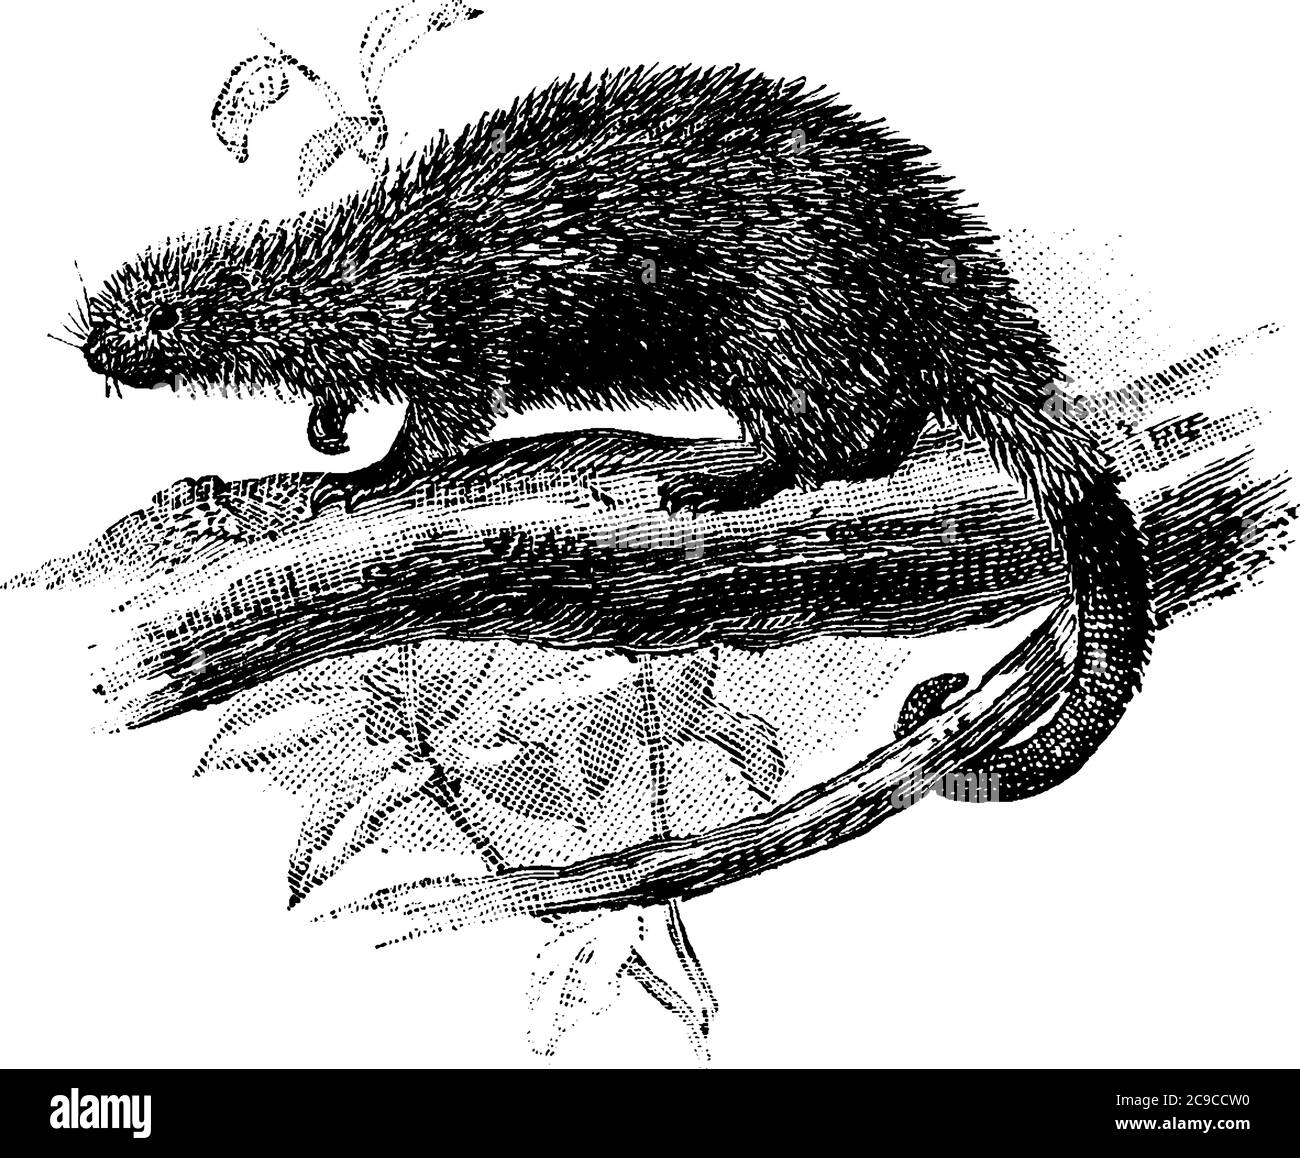 Eine typische Darstellung eines kleinen Stachelschweines, auf den Zweigen des Baumes, mit einem prähensilen Schwanz und haben viele Federkeile am ganzen Körper, Jahrgang l Stock Vektor